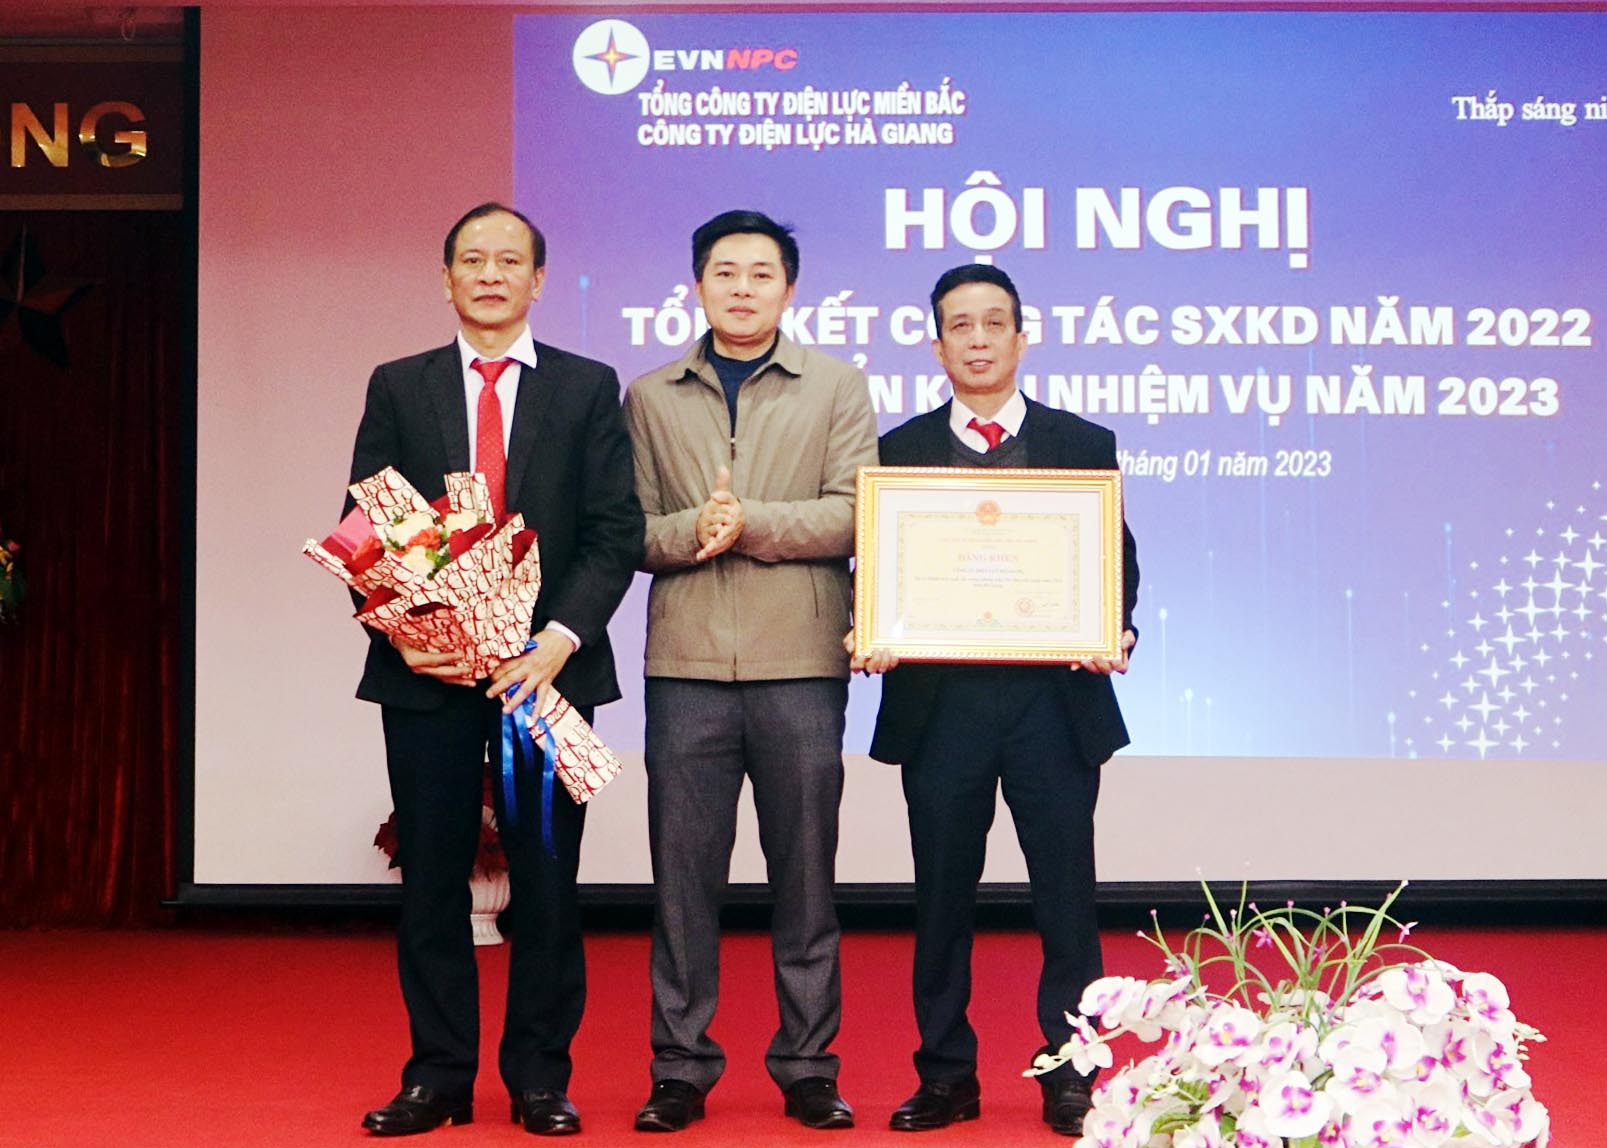 Được sự ủy quyền, lãnh đạo Sở Công thương trao Bằng khen của Chủ tịch UBND tỉnh cho Công ty Điện lực Hà Giang đã có thành tích xuất sắc trong phong trào Thi đua yêu nước năm 2022 